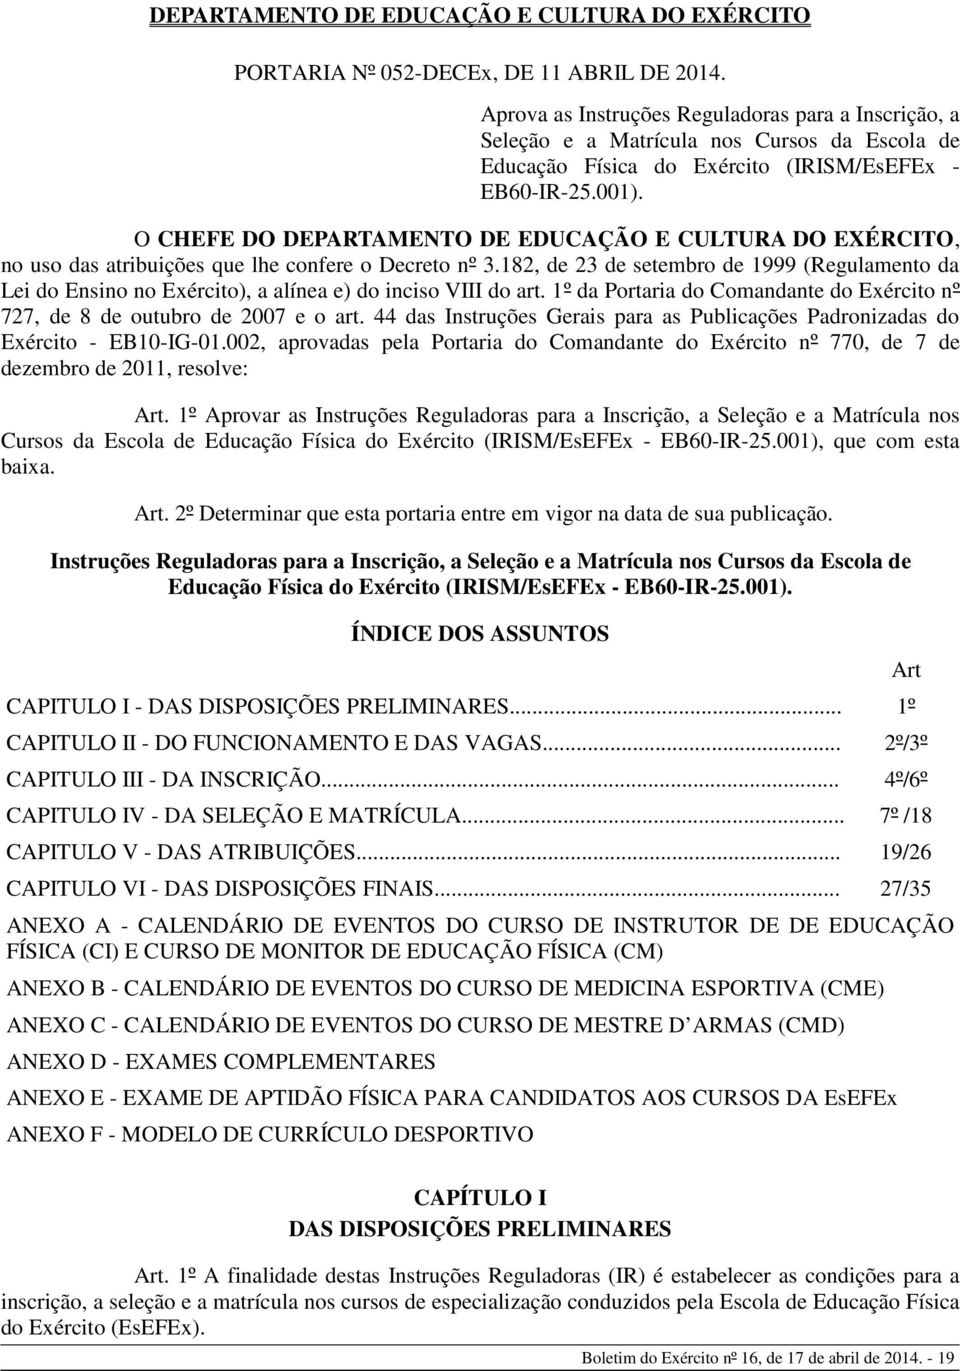 O CHEFE DO DEPARTAMENTO DE EDUCAÇÃO E CULTURA DO EXÉRCITO, no uso das atribuições que lhe confere o Decreto nº 3.